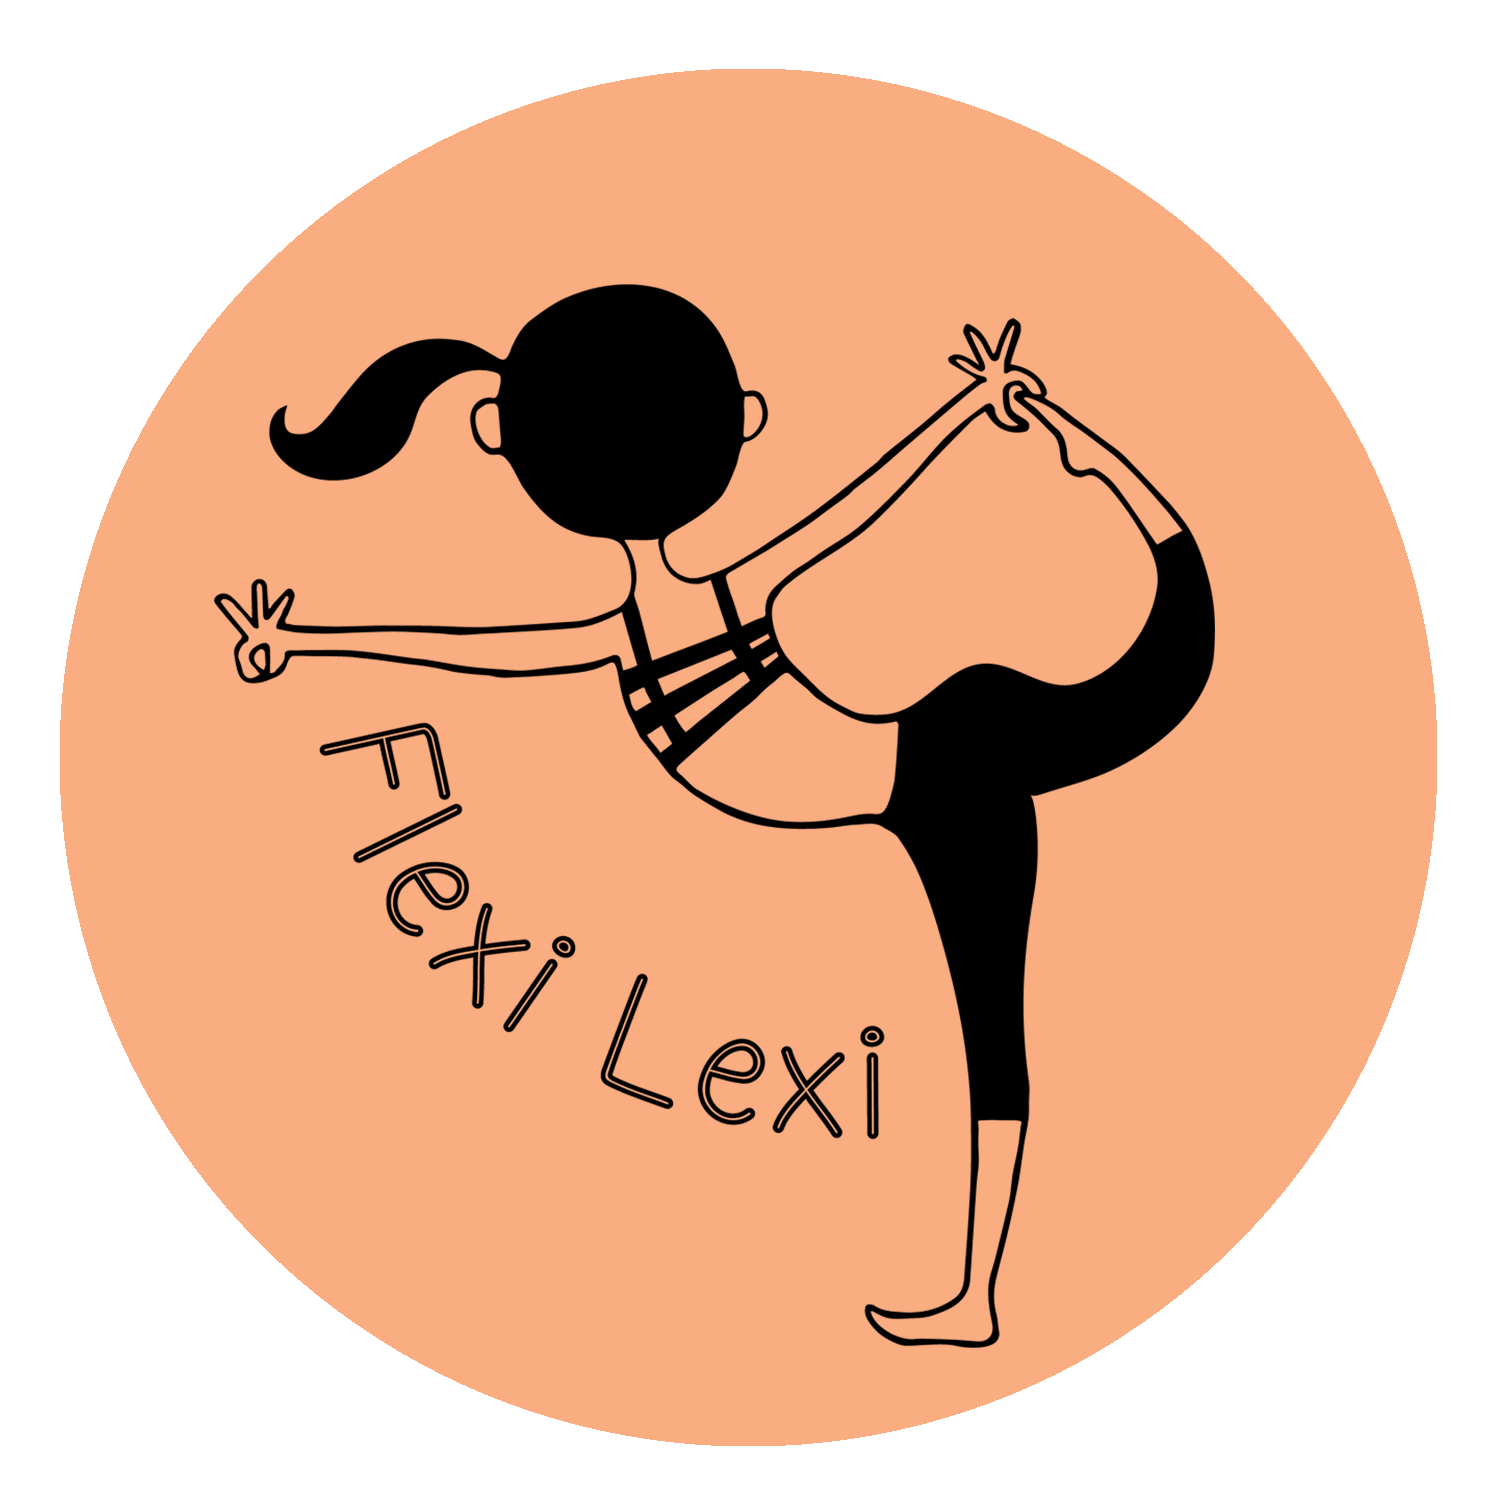 Flexi Lexi – The Pretty Boxes